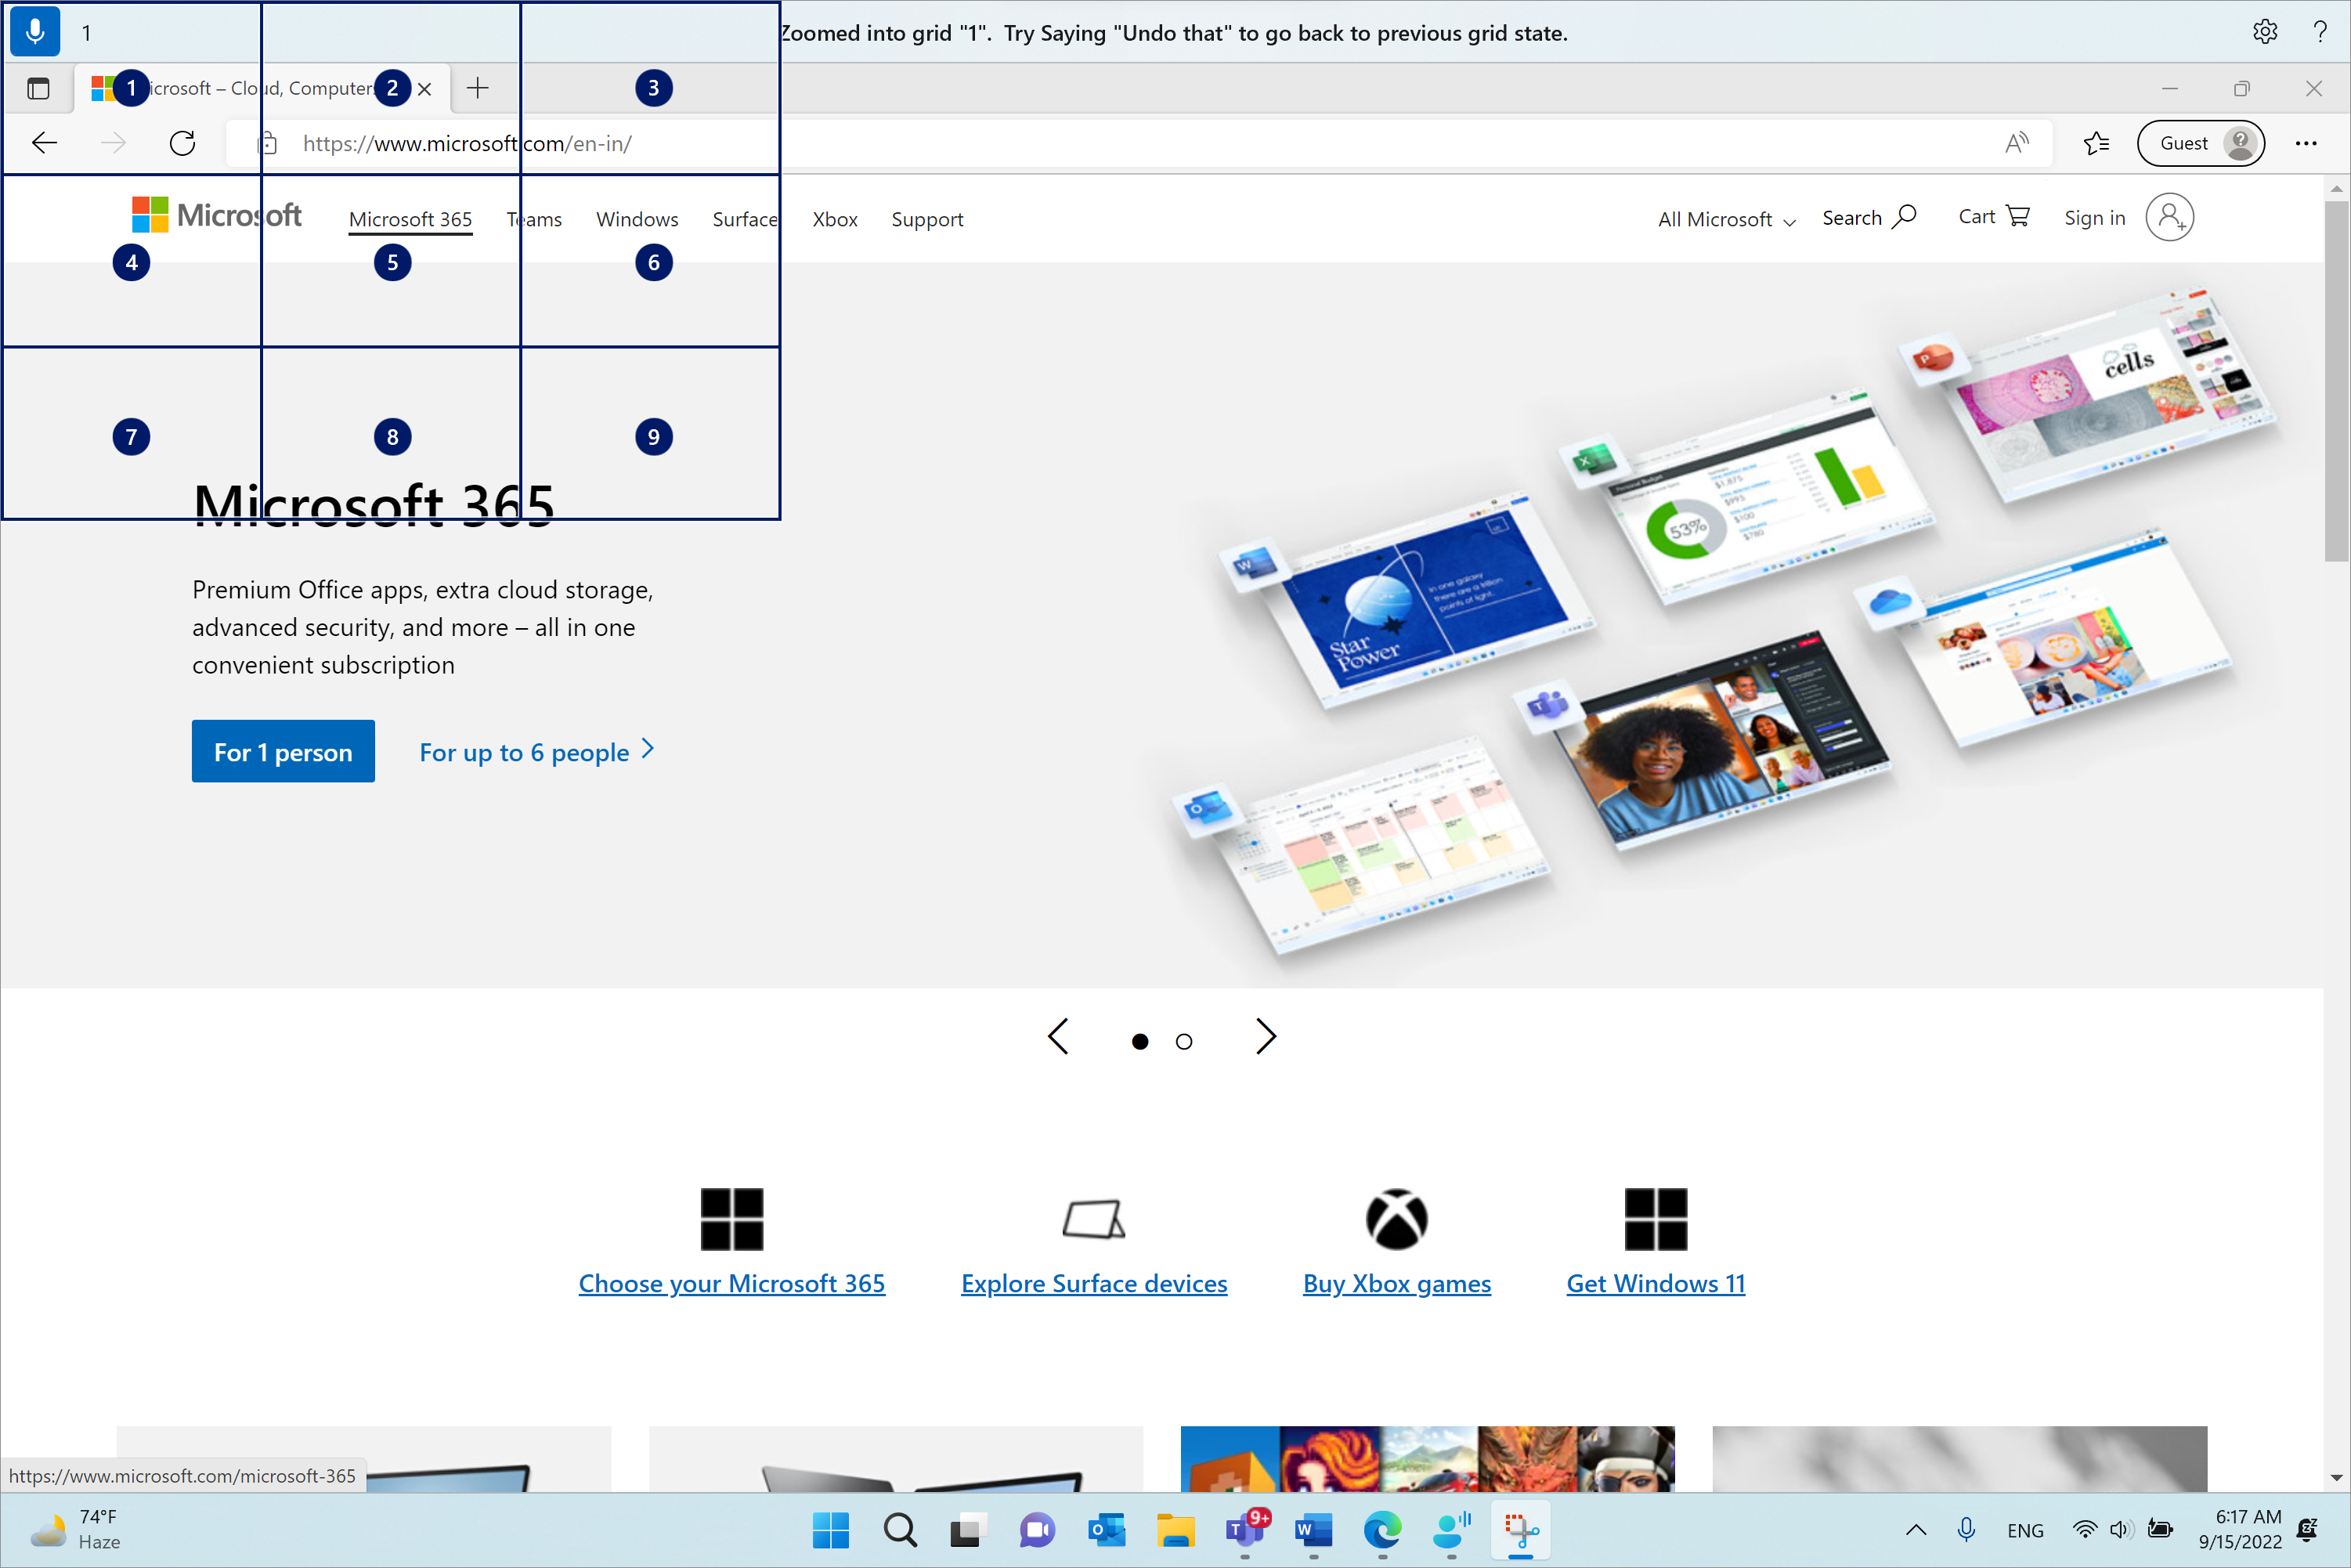 Microsoft Edge terbuka dan berada di halaman Microsoft.com. Bilah akses suara berada di atas dan dalam status mendengarkan. Perintah yang dikeluarkan adalah "1" dan umpan balik yang ditampilkan adalah "Diperbesar ke kisi "1". Coba ucapkan "batalkan" untuk kembali ke status kisi sebelumnya."